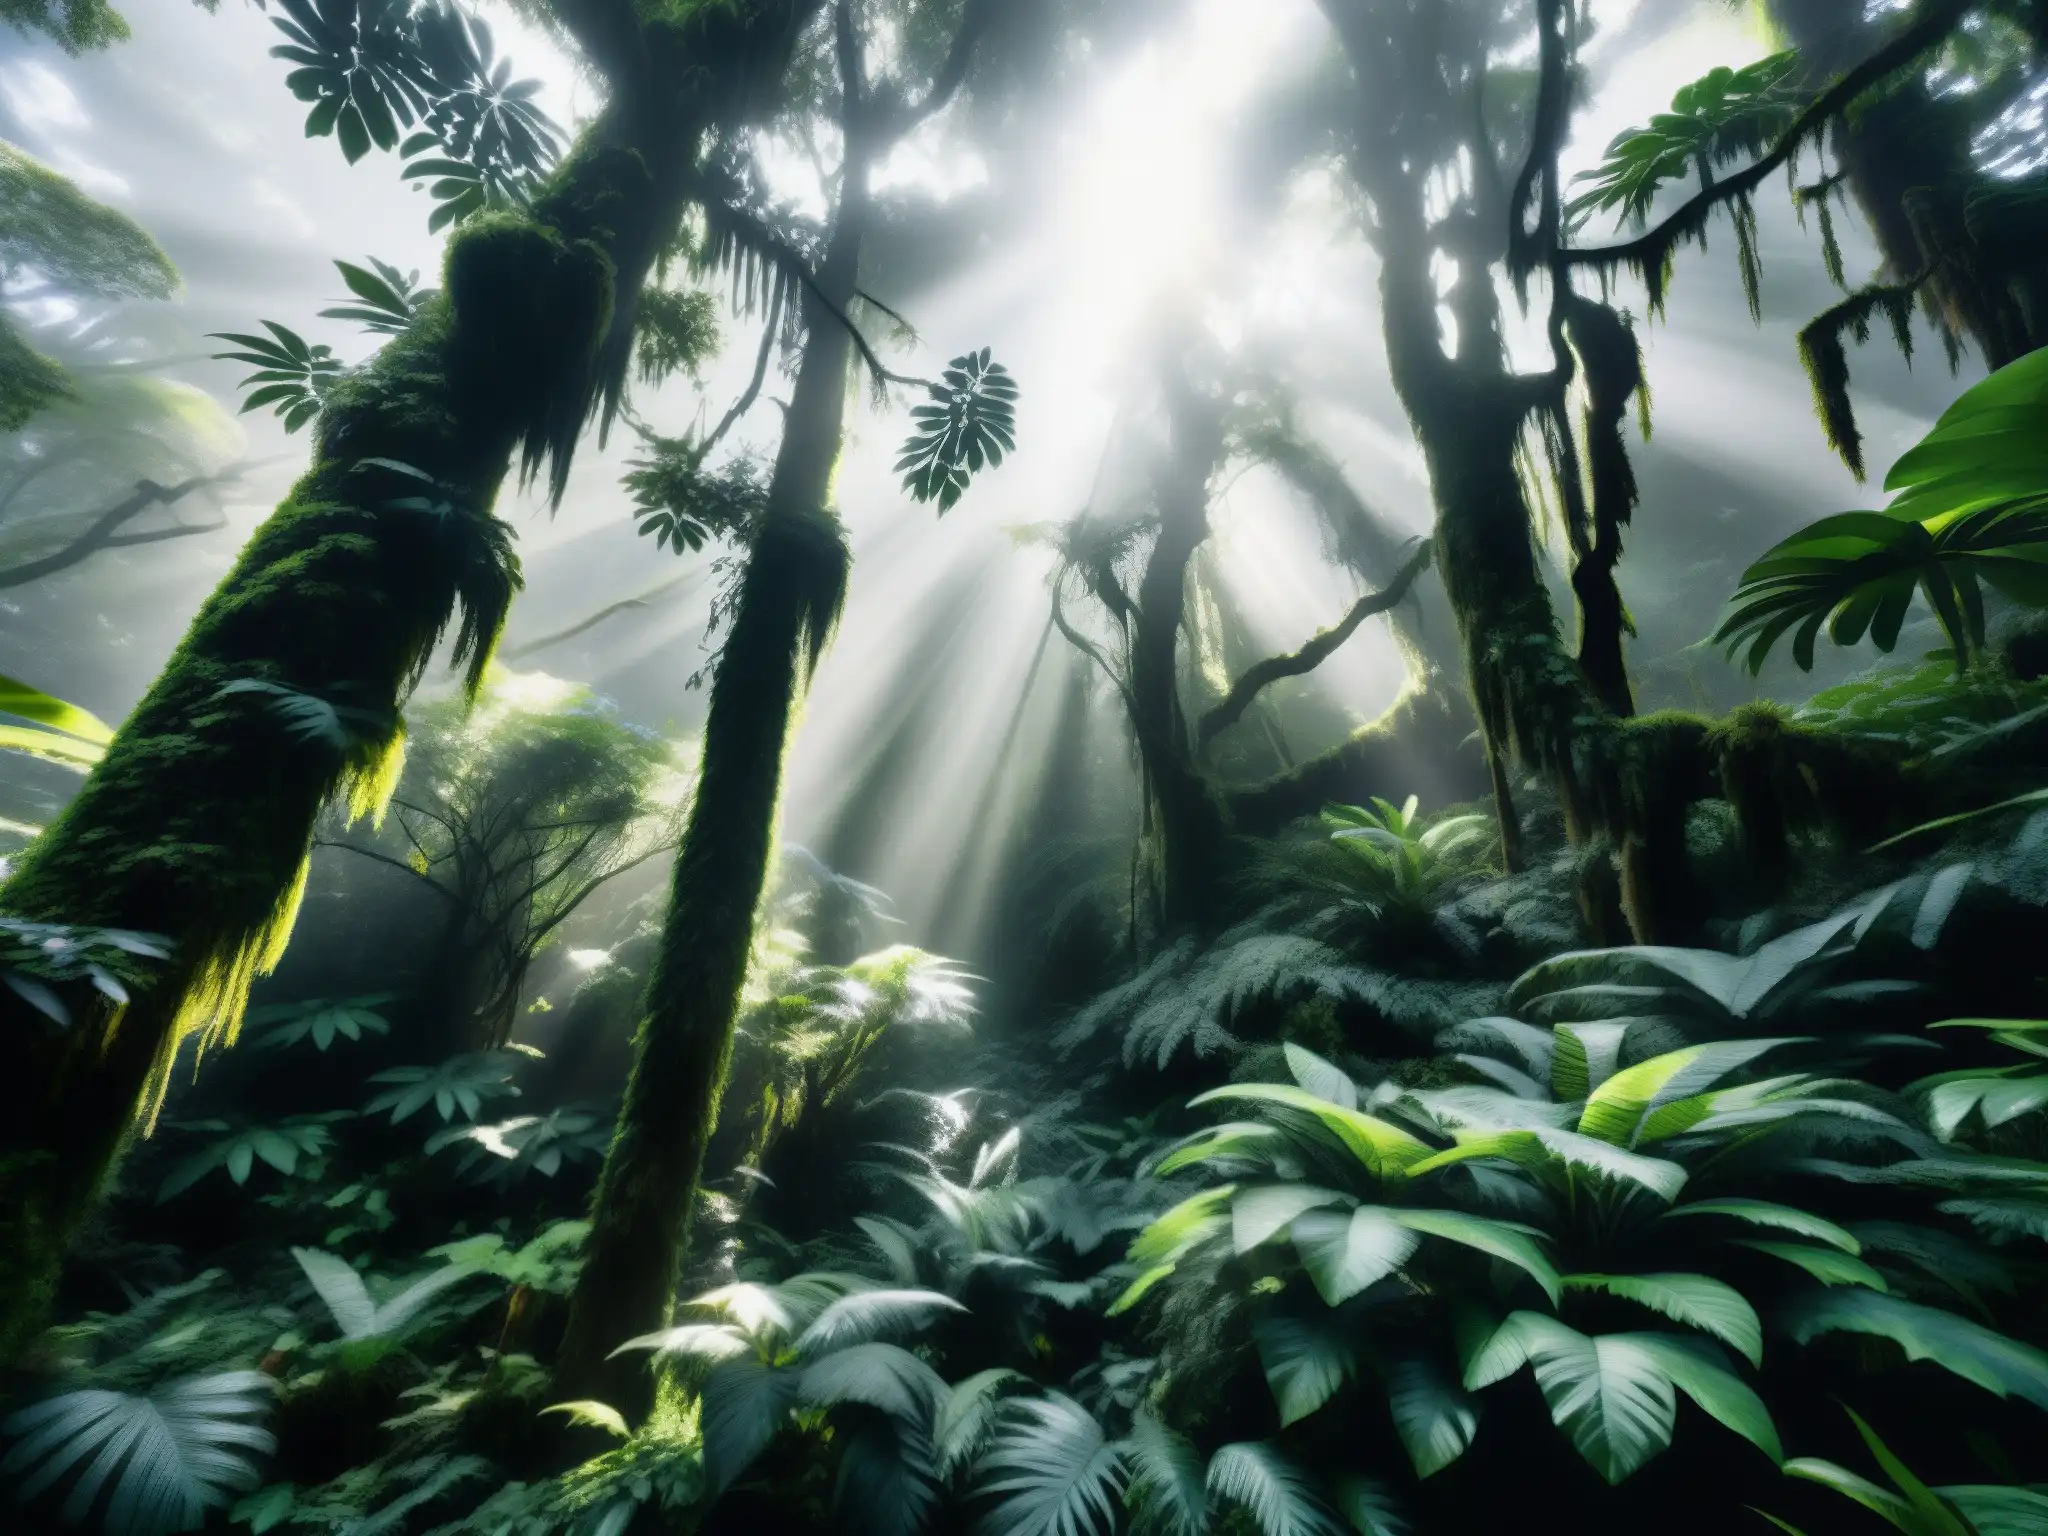 Imagen en blanco y negro de un denso bosque lluvioso cubierto de niebla en la costa del Pacífico, evocando la misteriosa y antigua leyenda de la Tunda